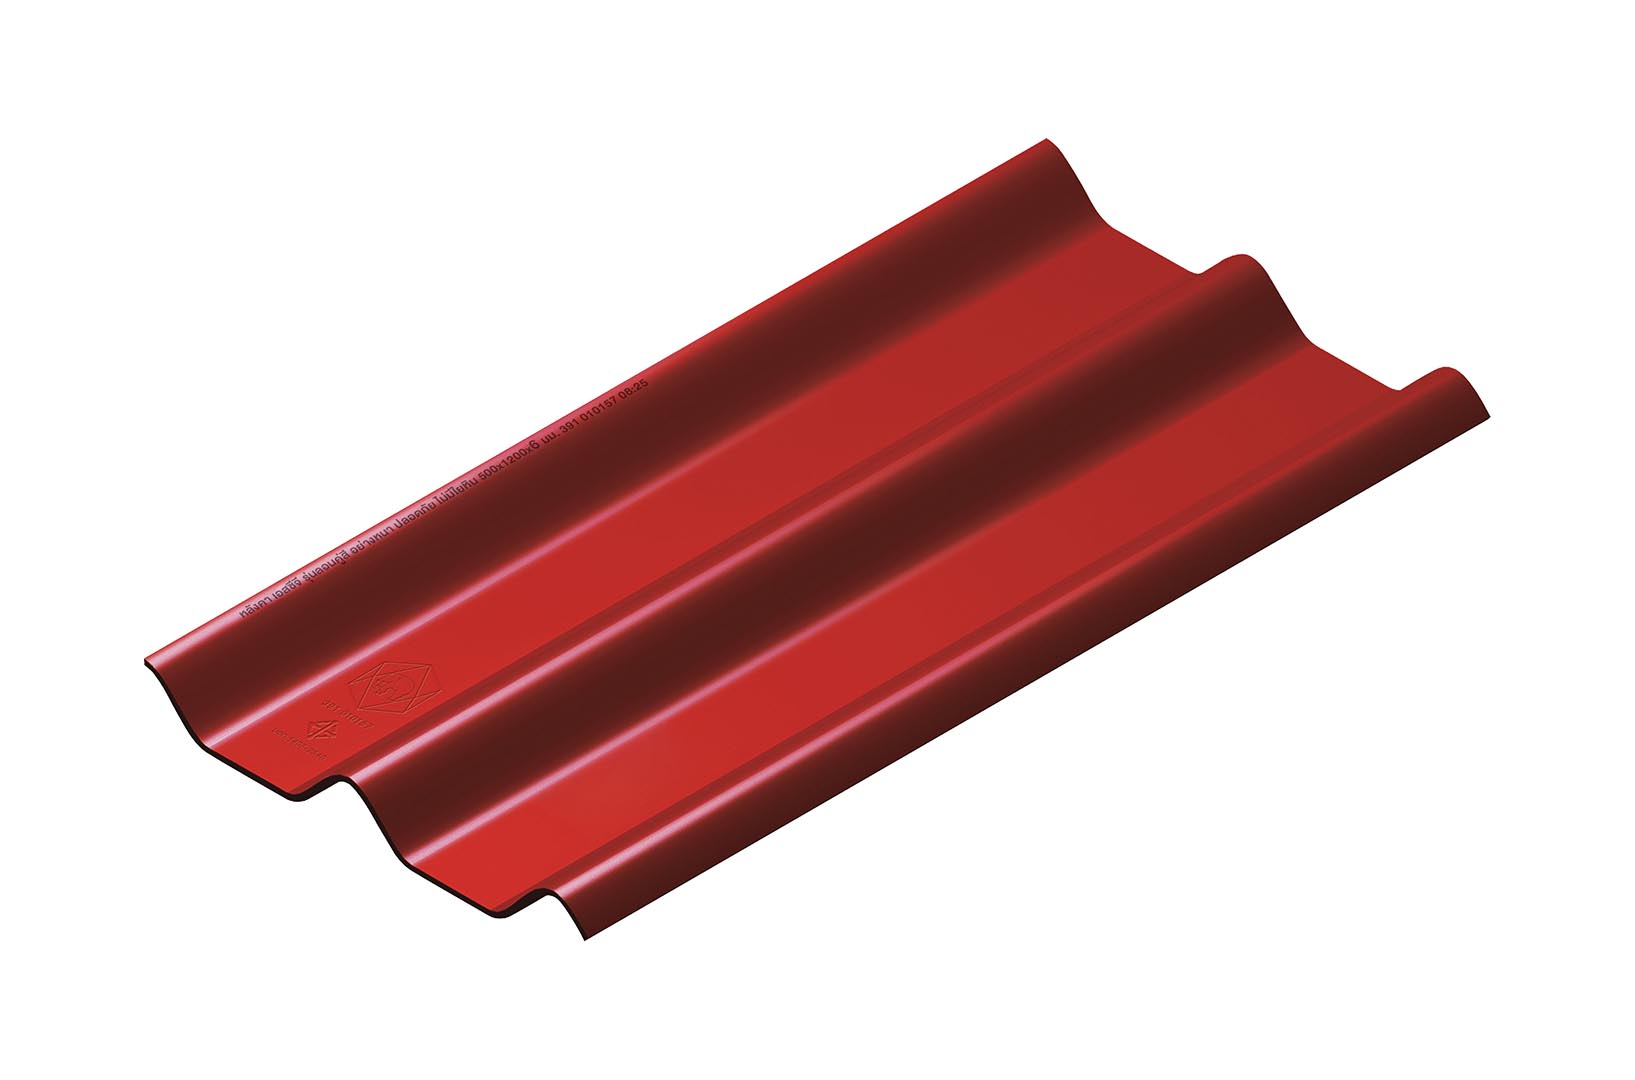 หลังคาไฟเบอร์ซีเมนต์ เอสซีจี รุ่น ลอนคู่ไฮบริด สีแดง ขนาด 50x150x0.55 ซม.